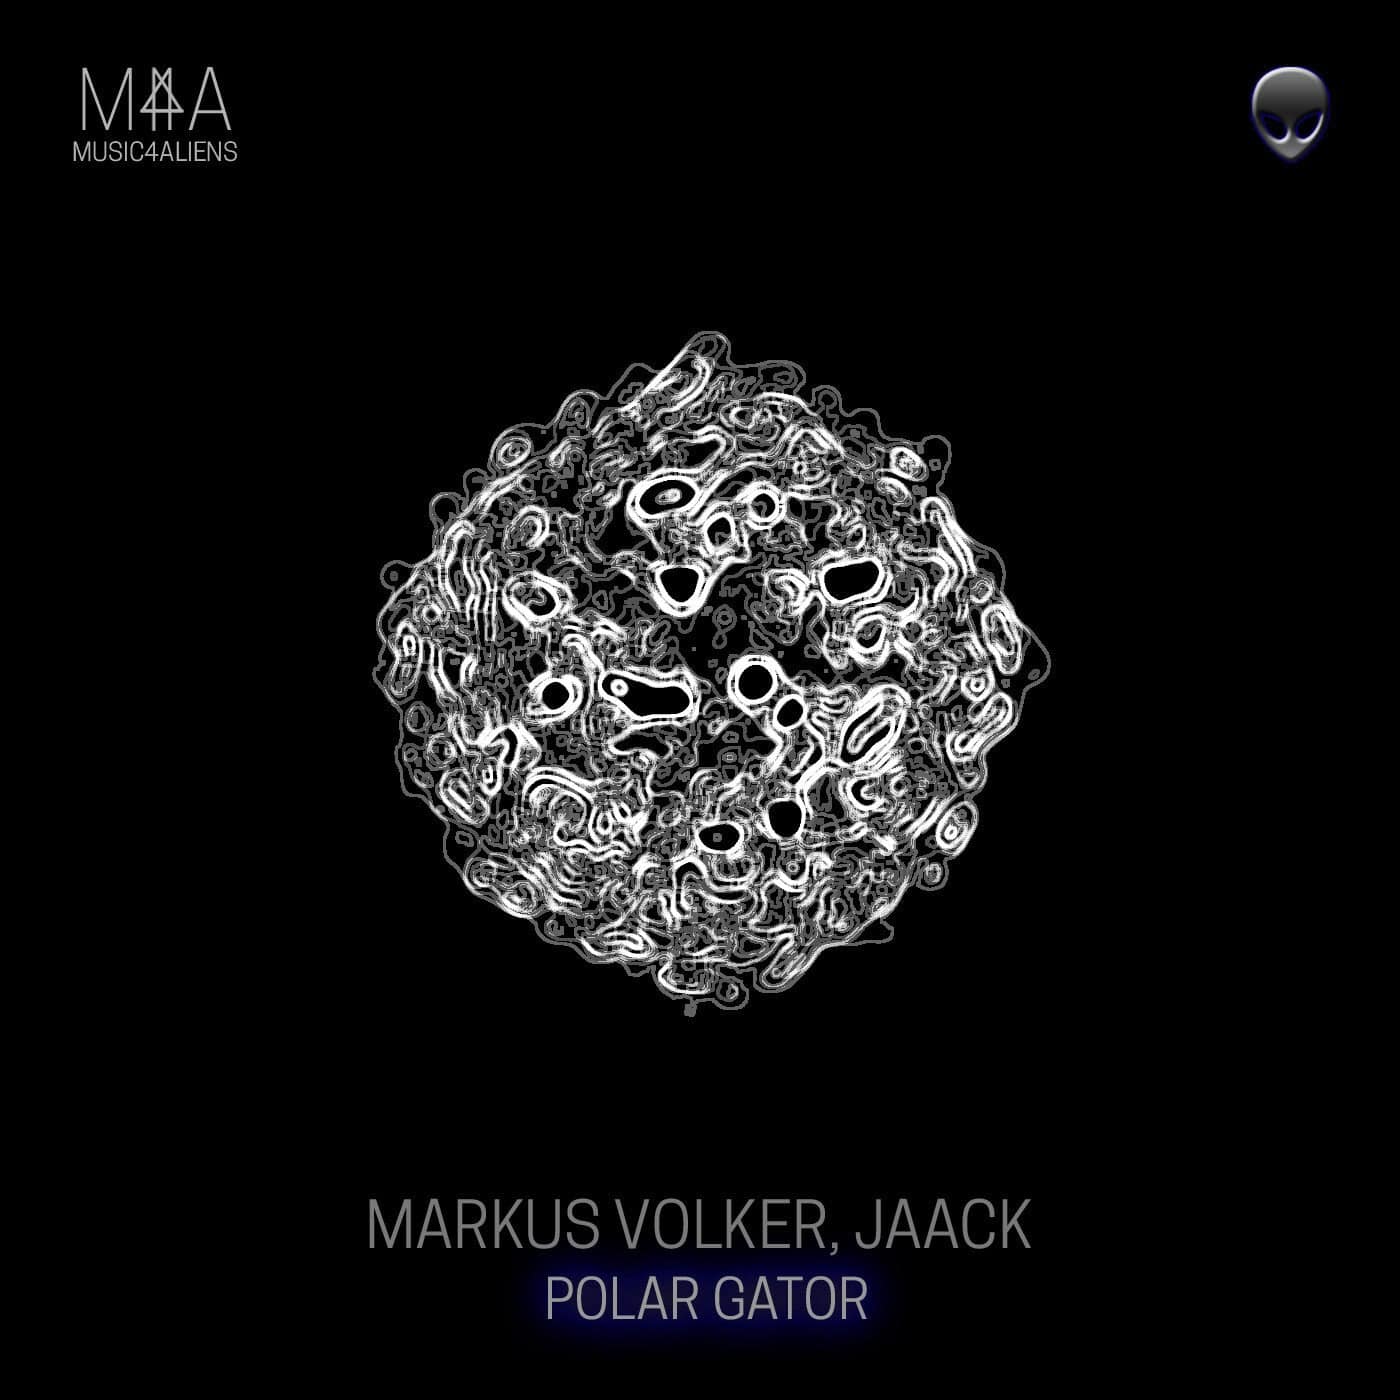 image cover: Markus Volker, Jaack - Polar Gator / M4S003